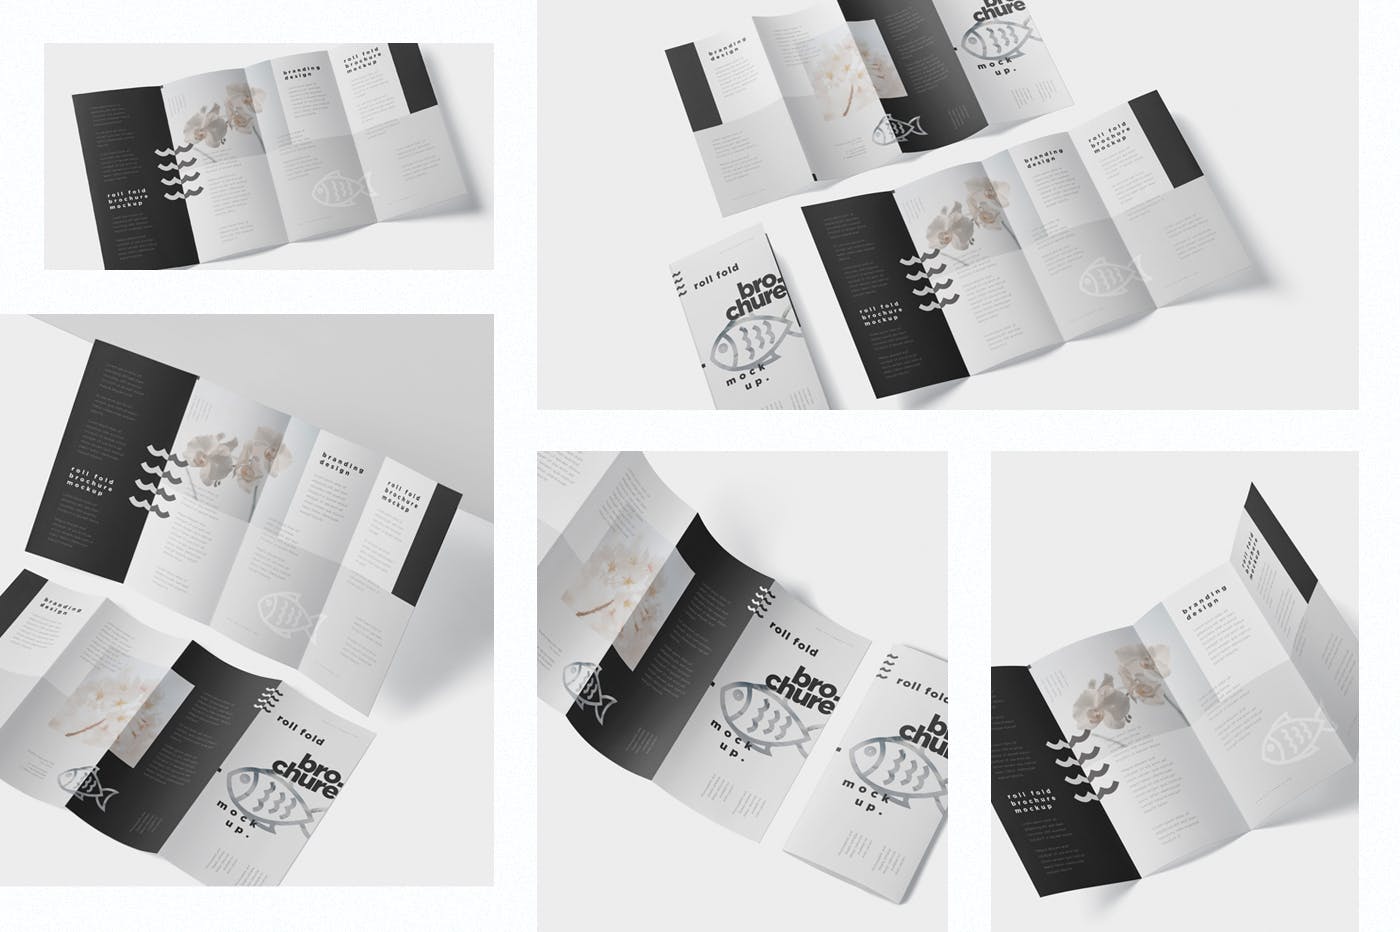 折叠设计风格企业传单/宣传册设计样机蚂蚁素材精选 Roll-Fold Brochure Mockup – DL DIN Lang Size插图(1)